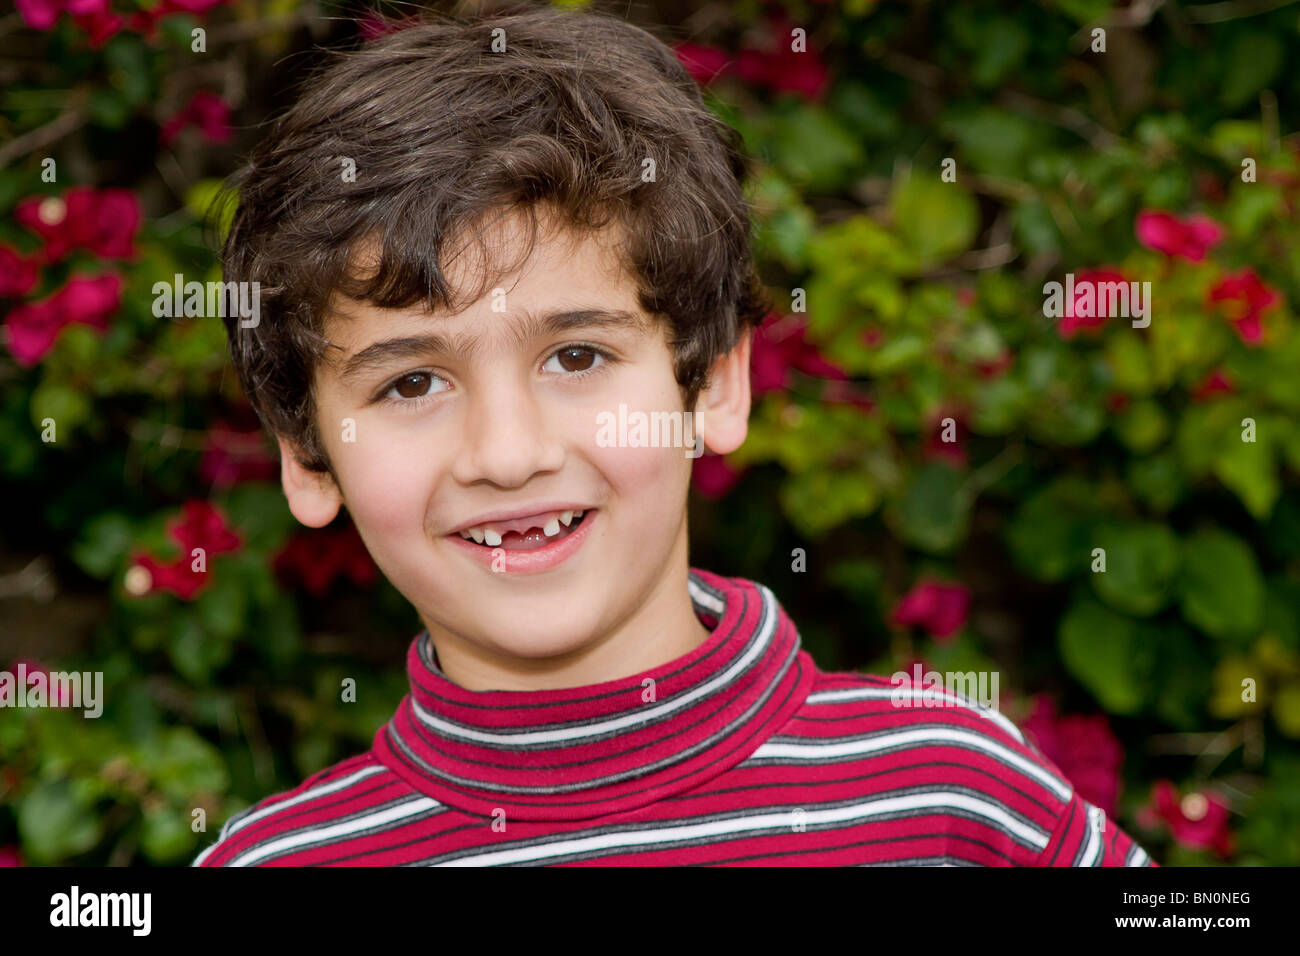 jungen 6-7 Jahre Olds persischen/iranischen Erbe junge mit zwei Vorderzähne fehlen.   Herr © Myrleen Pearson Stockfoto